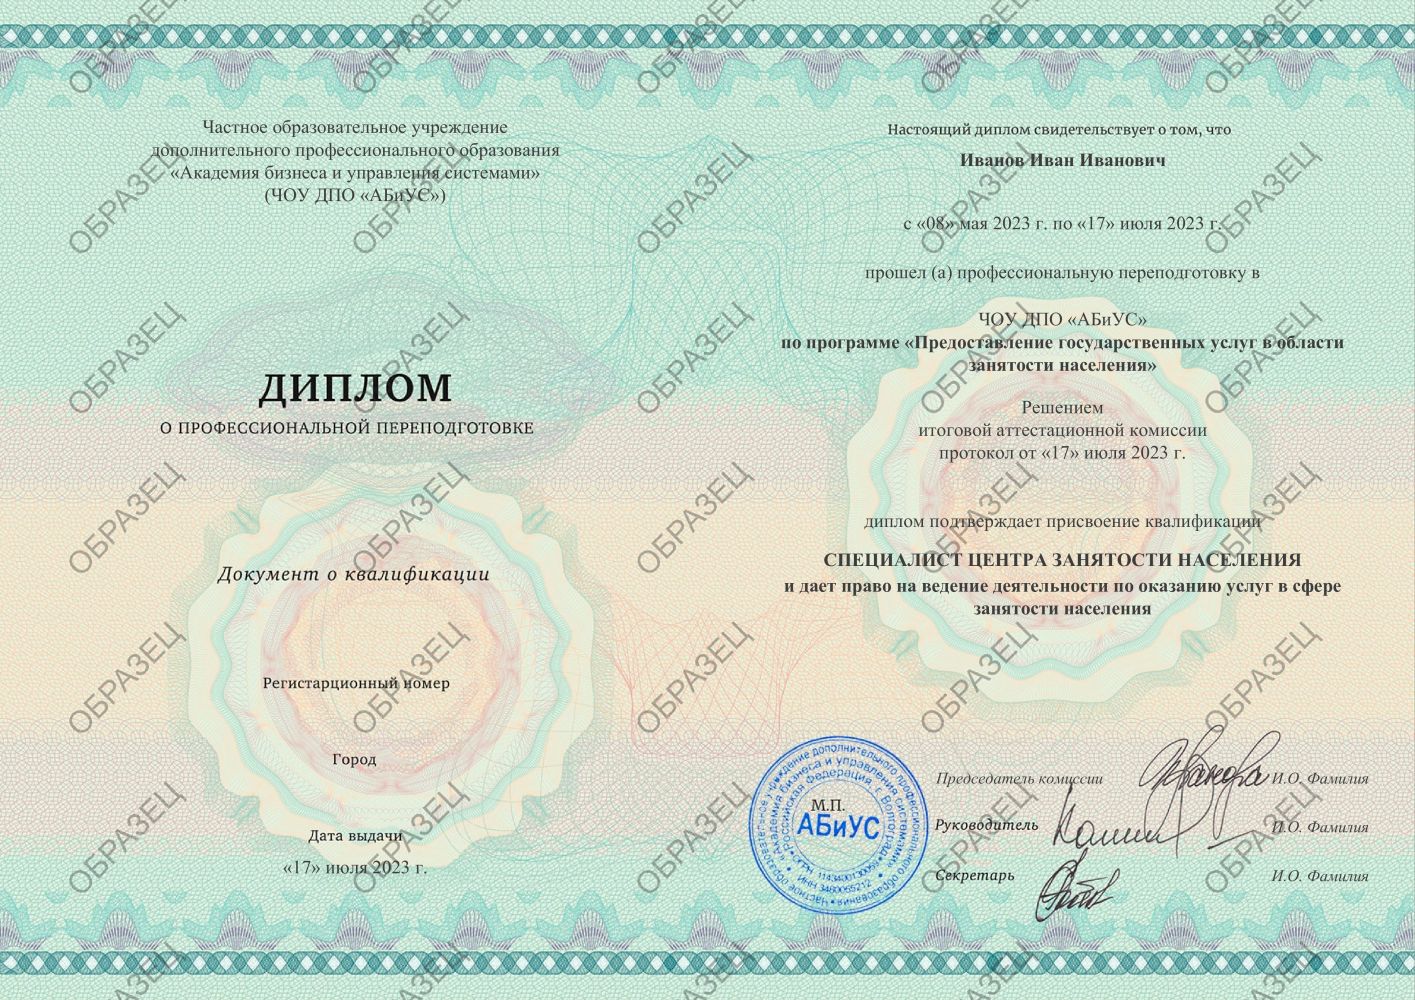 Диплом Предоставление государственных услуг в области занятости населения 260 часов 8563 руб.